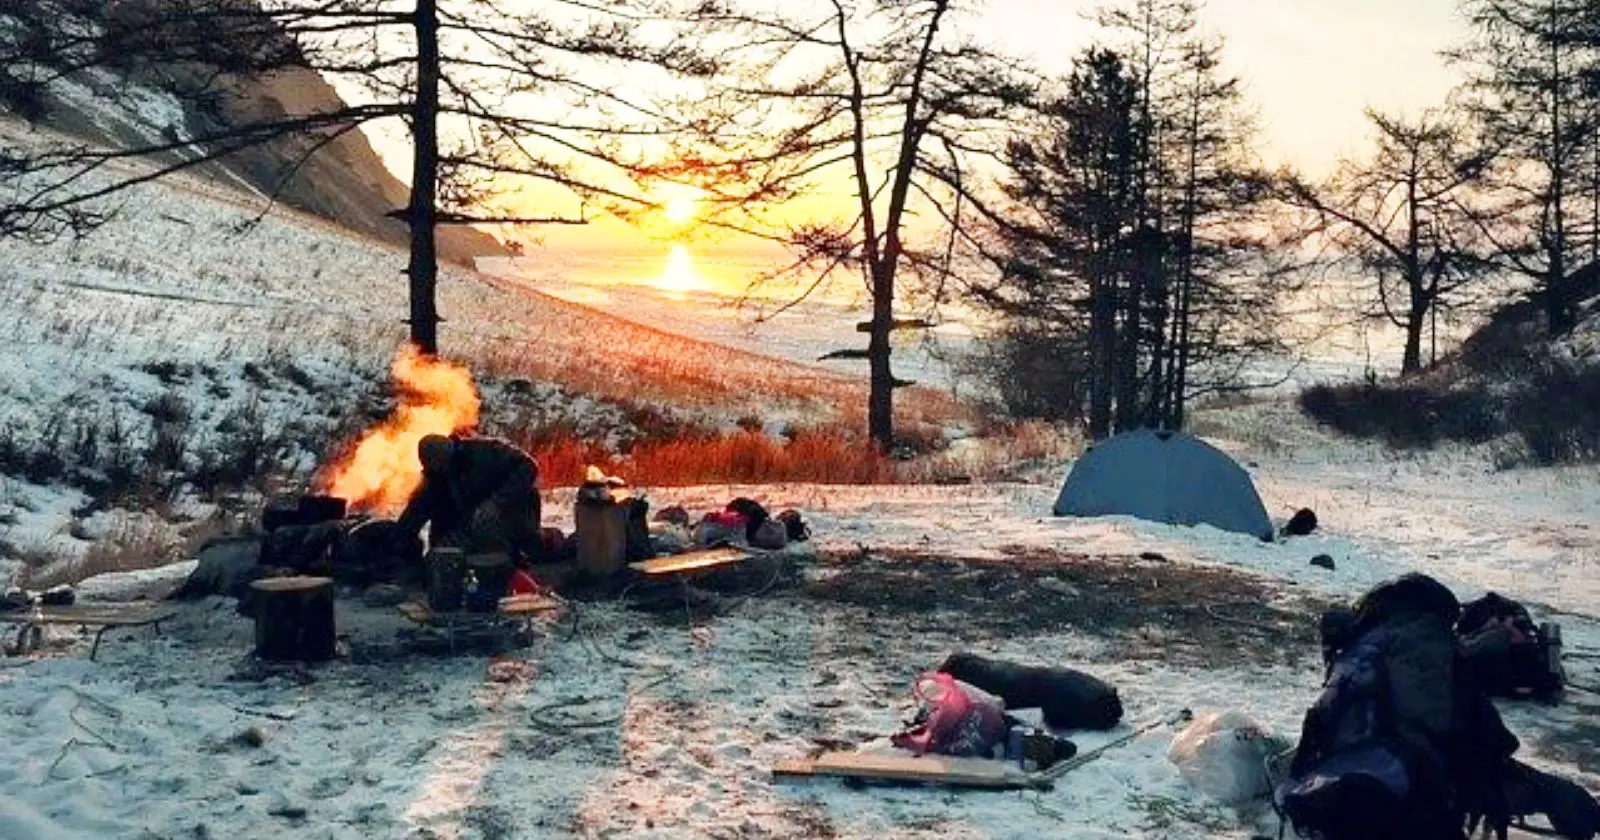 魅力たっぷり冬キャンプ 防寒対策とおすすめの道具を紹介 Takibi タキビ キャンプ アウトドアの総合情報サイト